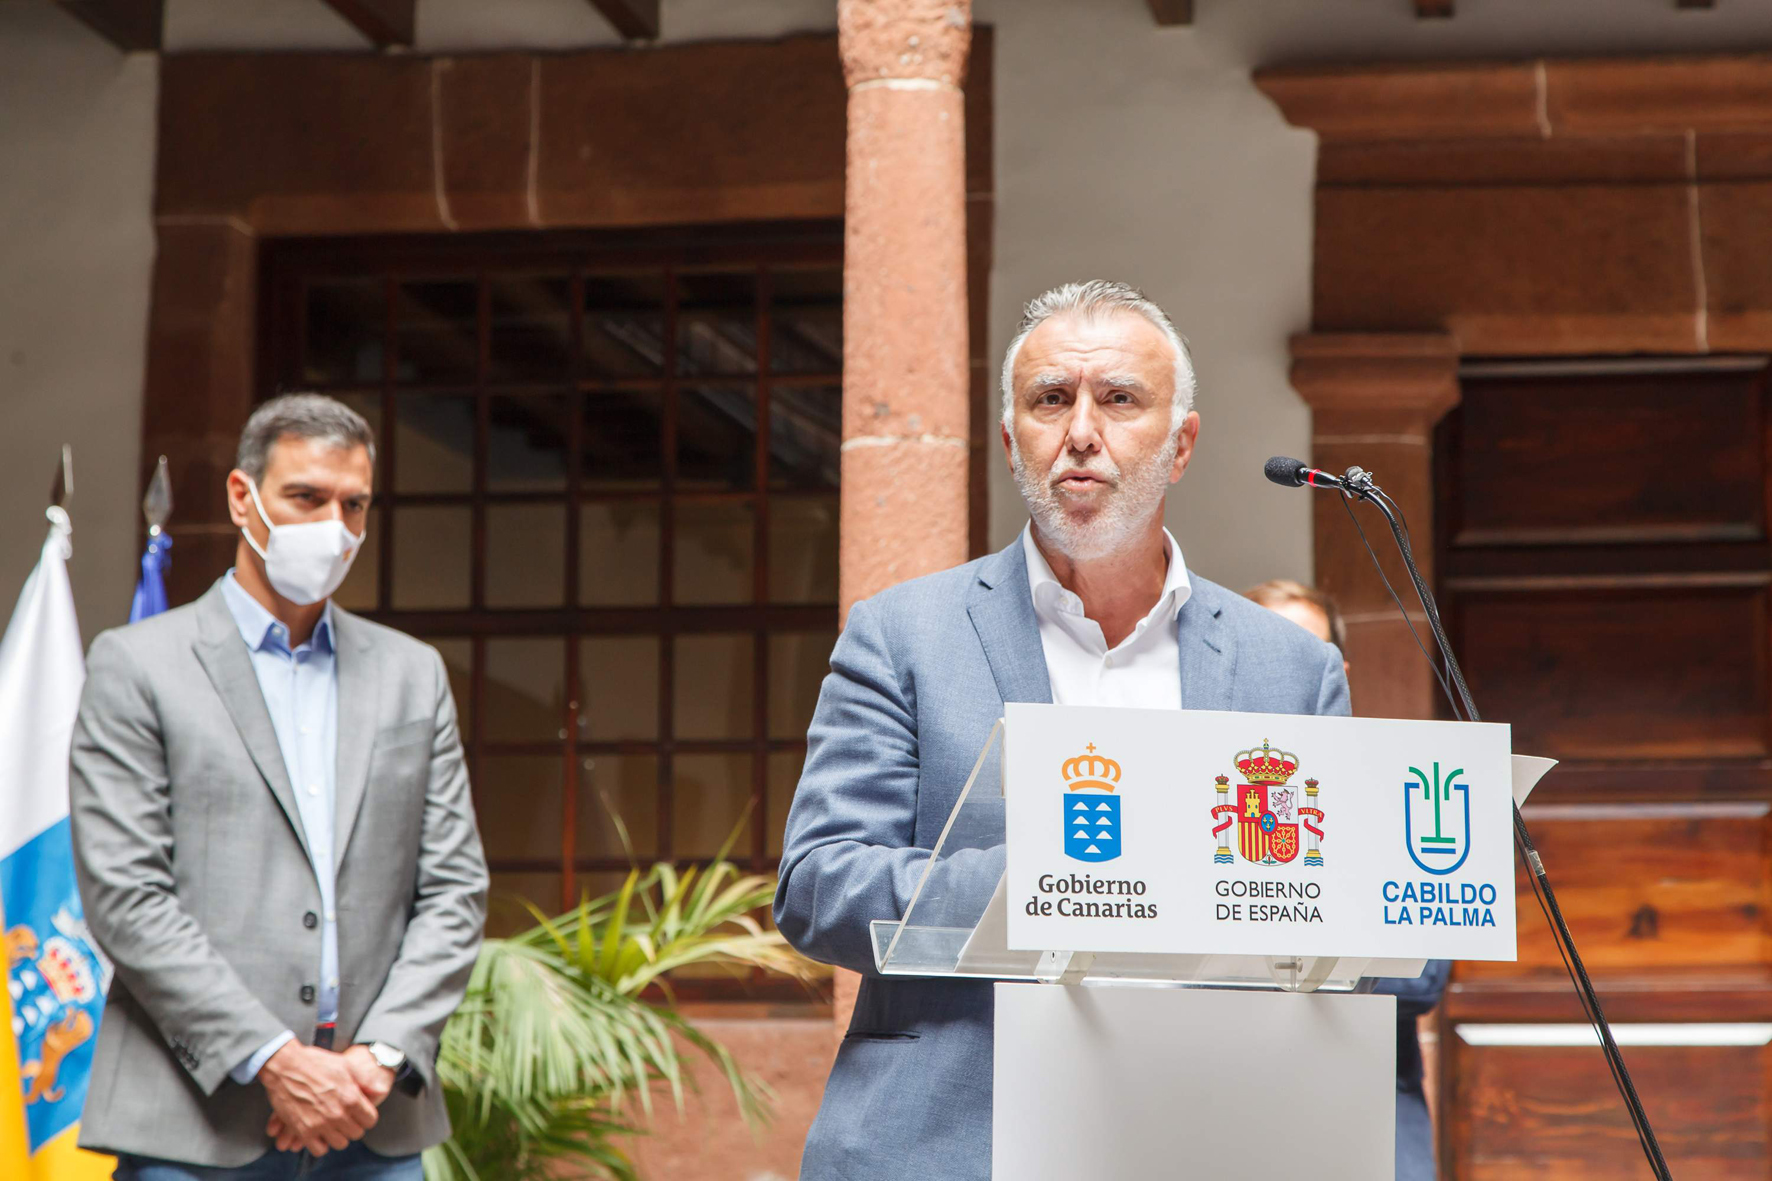 El Gobierno anuncia la apertura de oficina interadministrativa en Los Llanos de Aridane para atender a las personas afectadas por la erupción volcánica